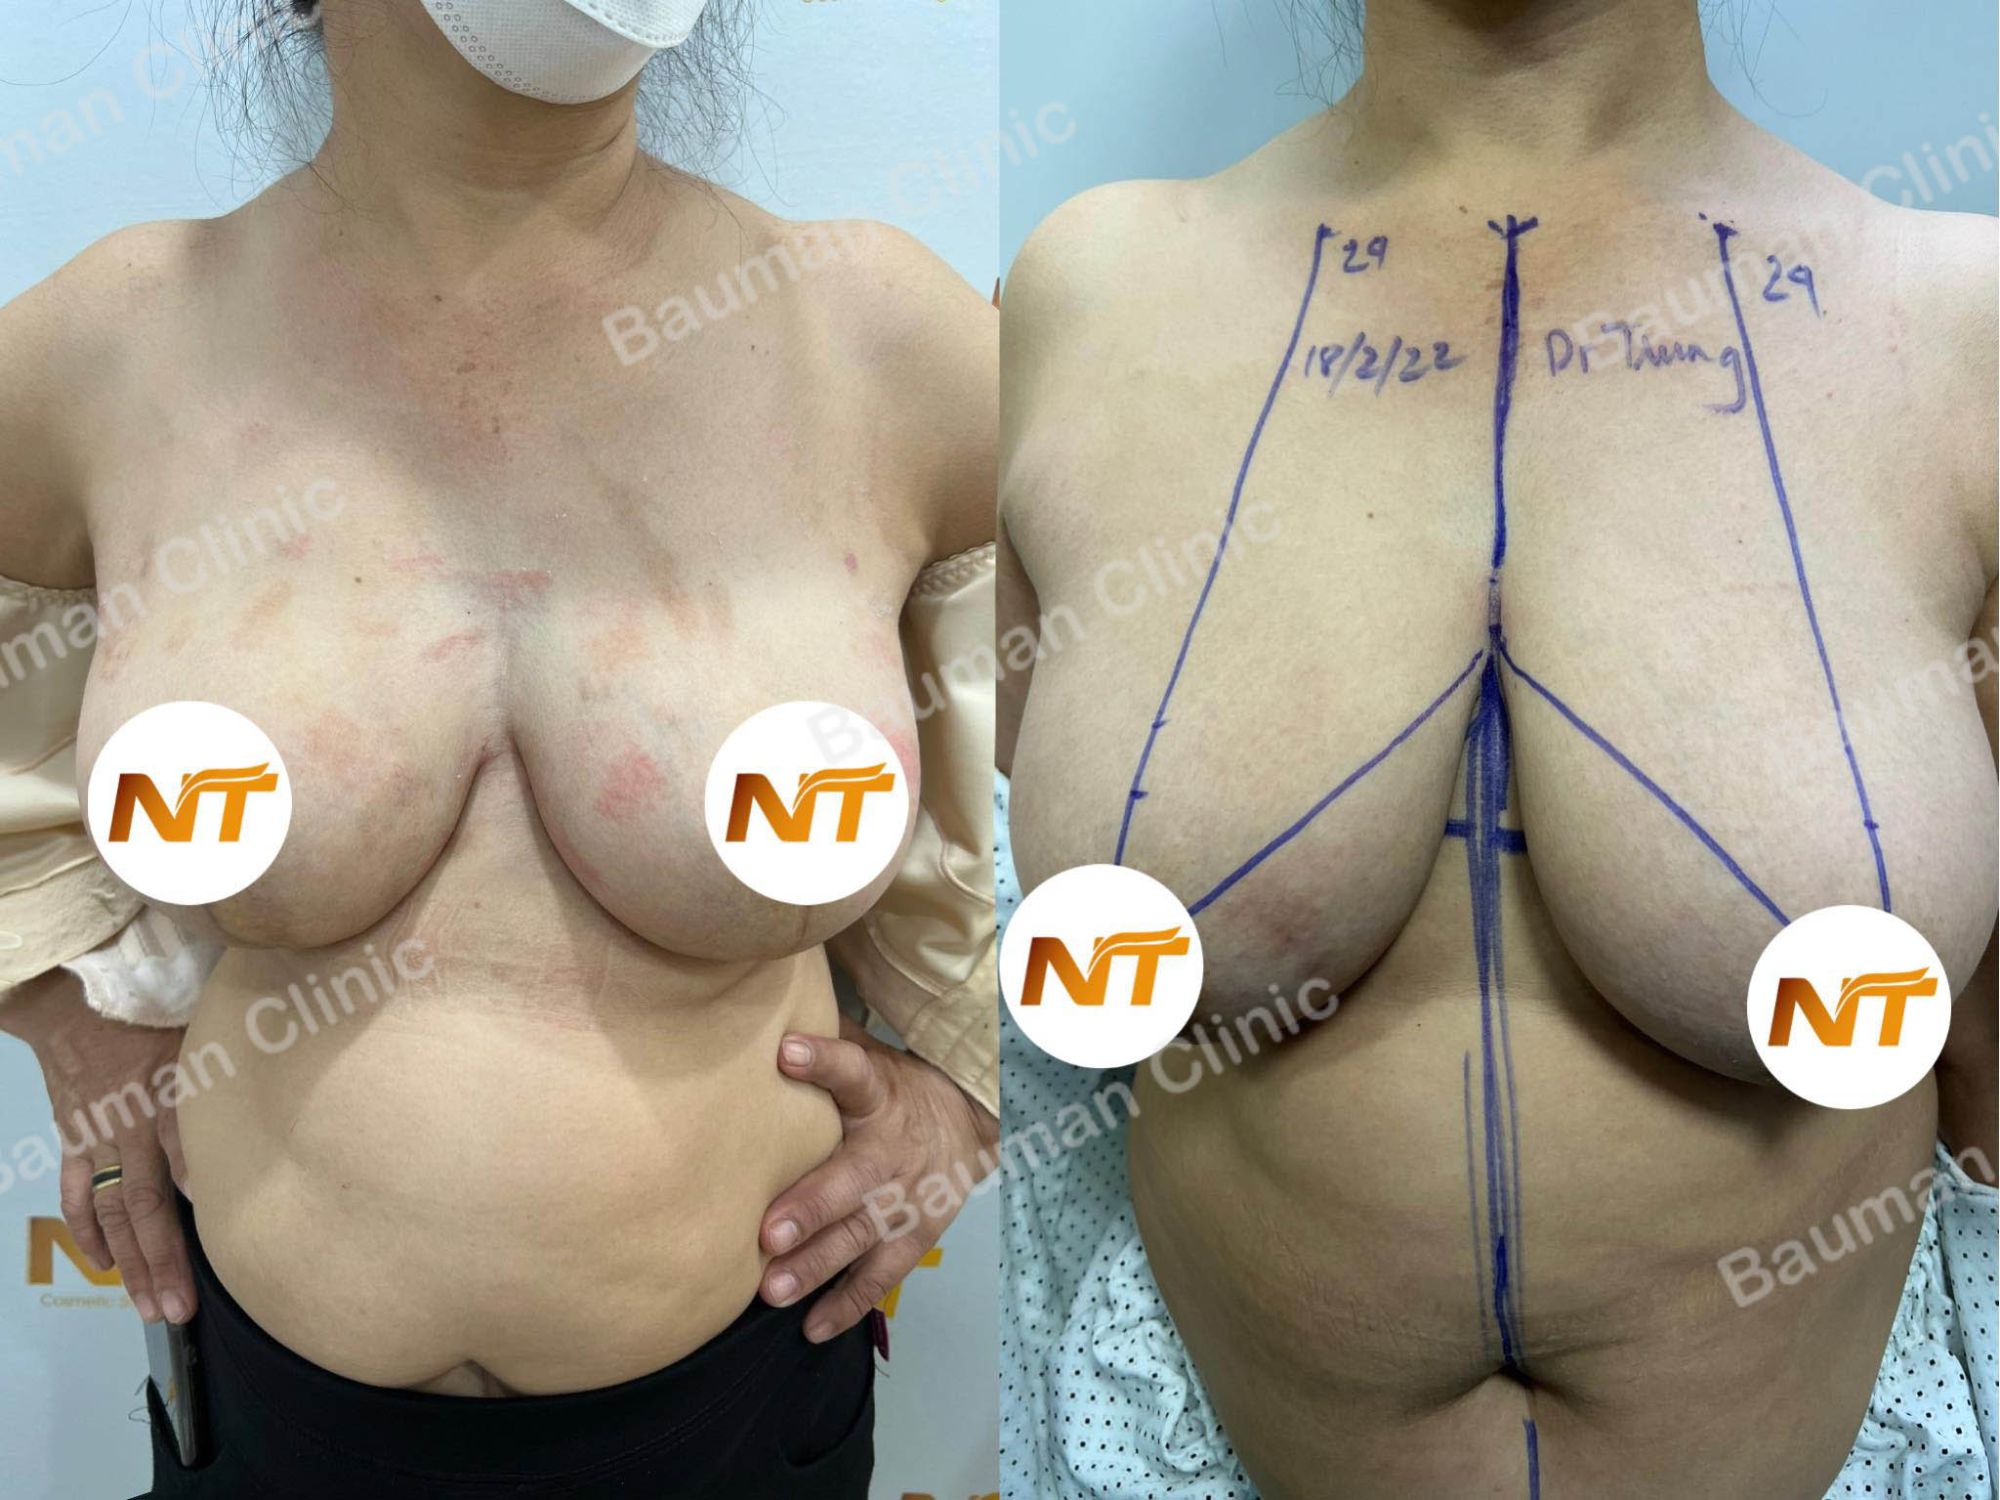 Thu nhỏ ngực phì đại, nữ 55 tuổi Hà Nội - case 50